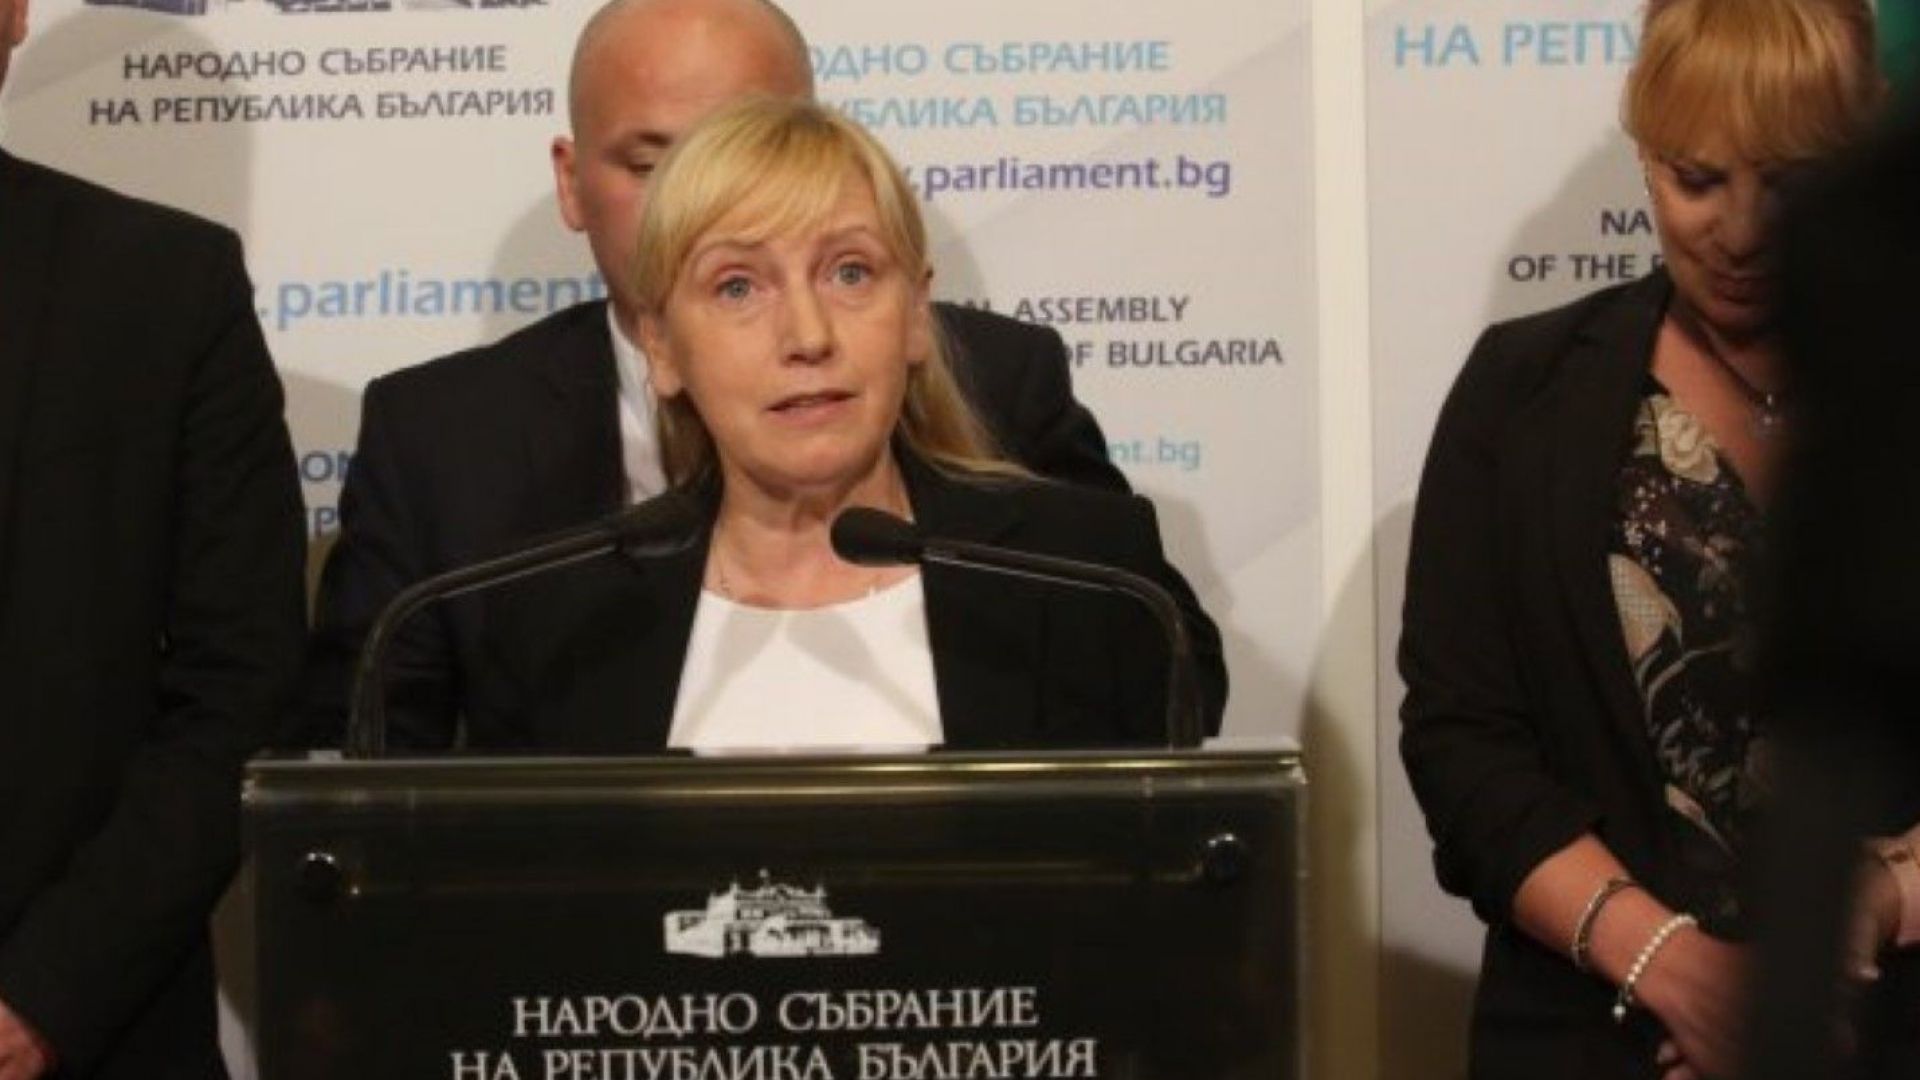 Йончева: Премиерът е взел цяла България, дали има остров - да разследват службите